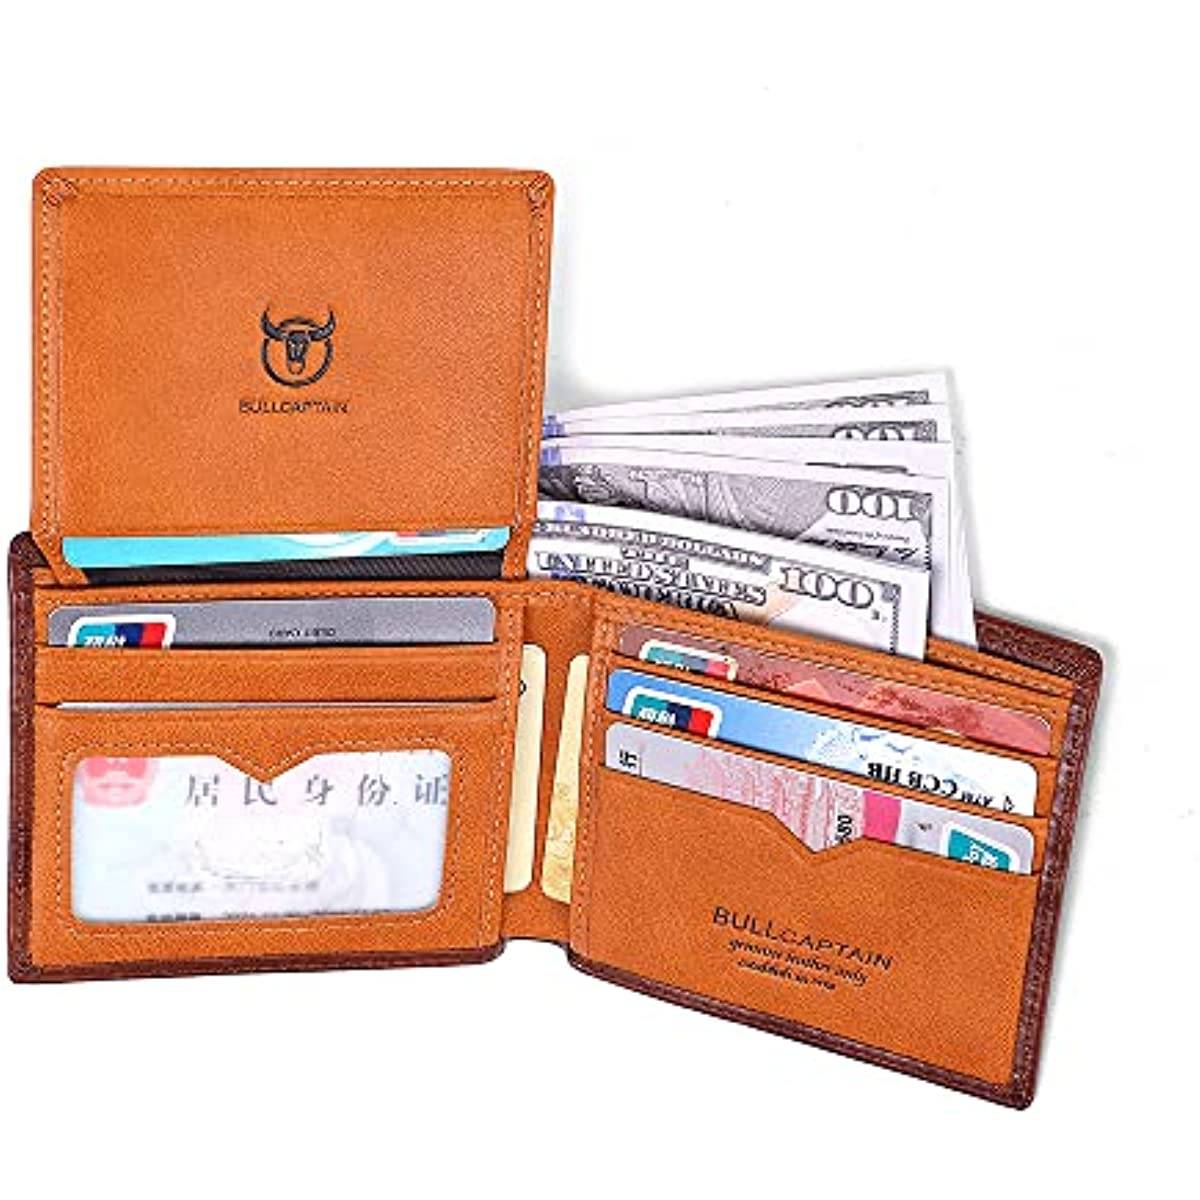 BULLCAPTAIN Men's Bifold Leather RFID Slim Wallet